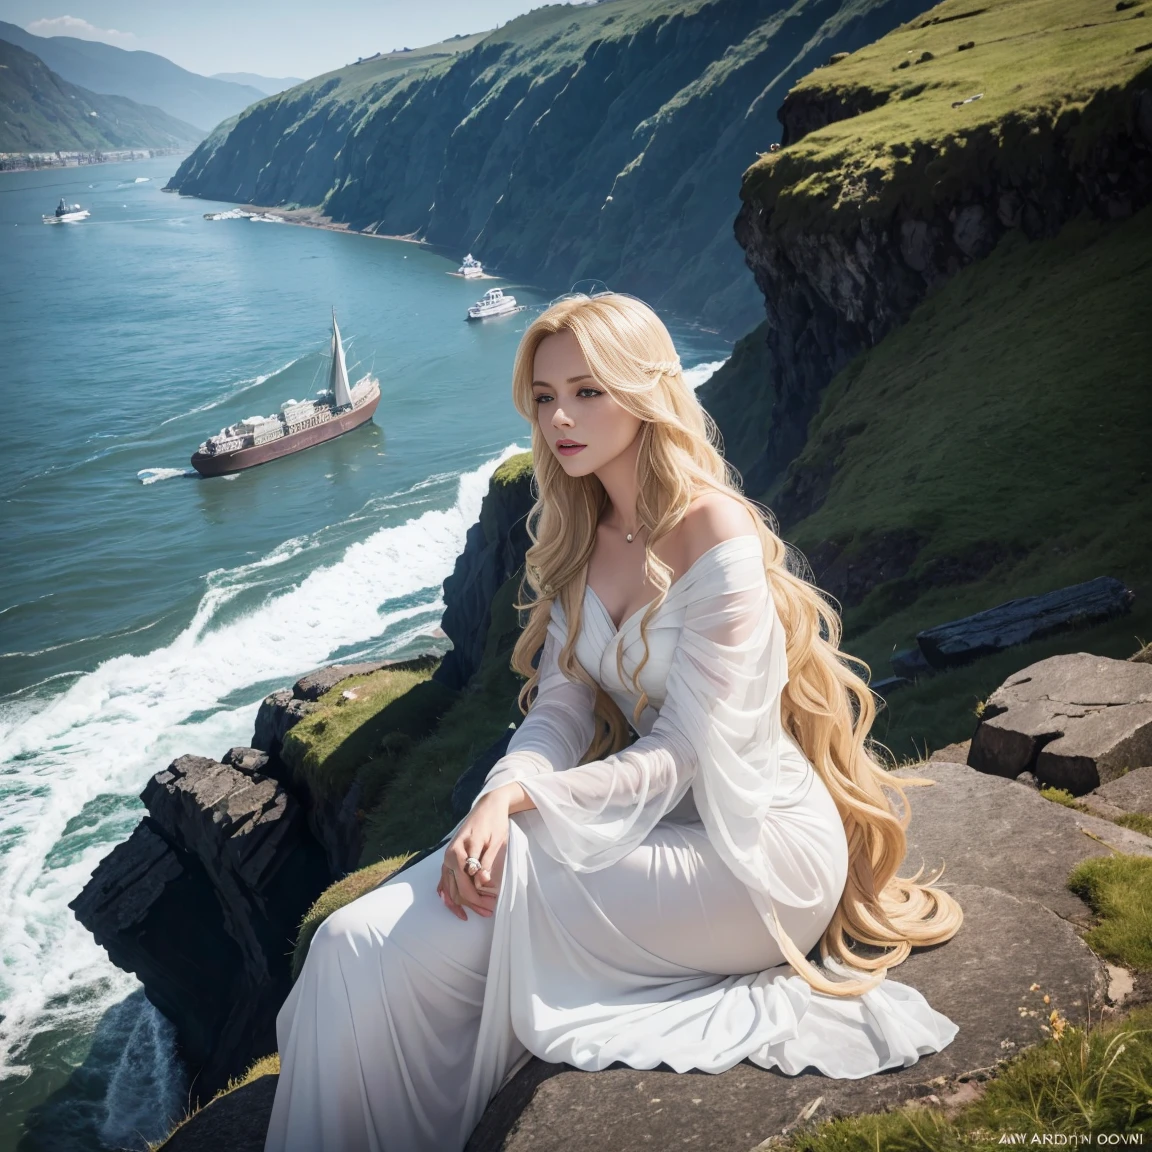 Eine Darstellung der Loreley, die deutsche Sirene, sitzt auf einer Felsklippe am Rhein. Sie hat lange blonde Haare, und ist in ein fließendes Kleid gekleidet. sie singt, mit einem heiteren, aber eindringlichen Ausdruck, während die Schiffe gefährlich nahe an die Felsen heranfahren.
